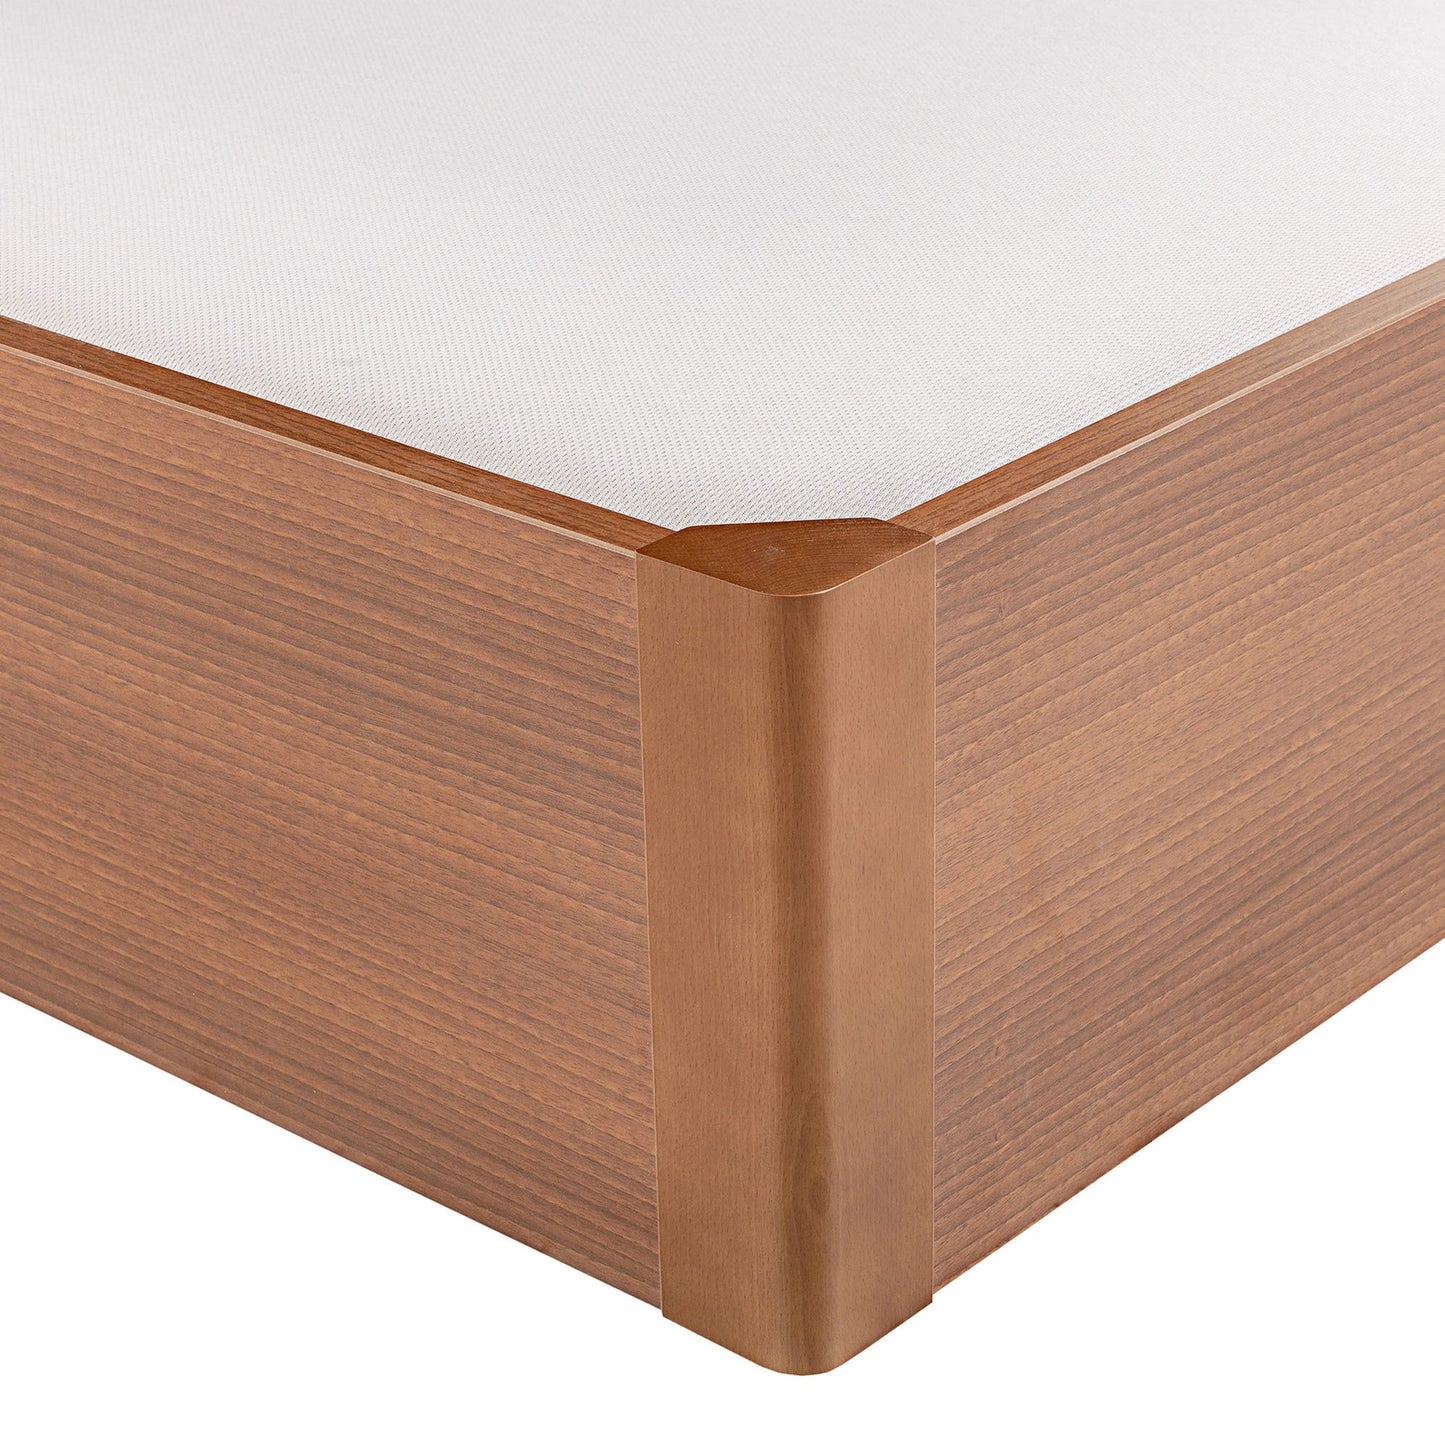 Canapé abatible de madera tapa única de color cerezo - DESIGN - 140x190